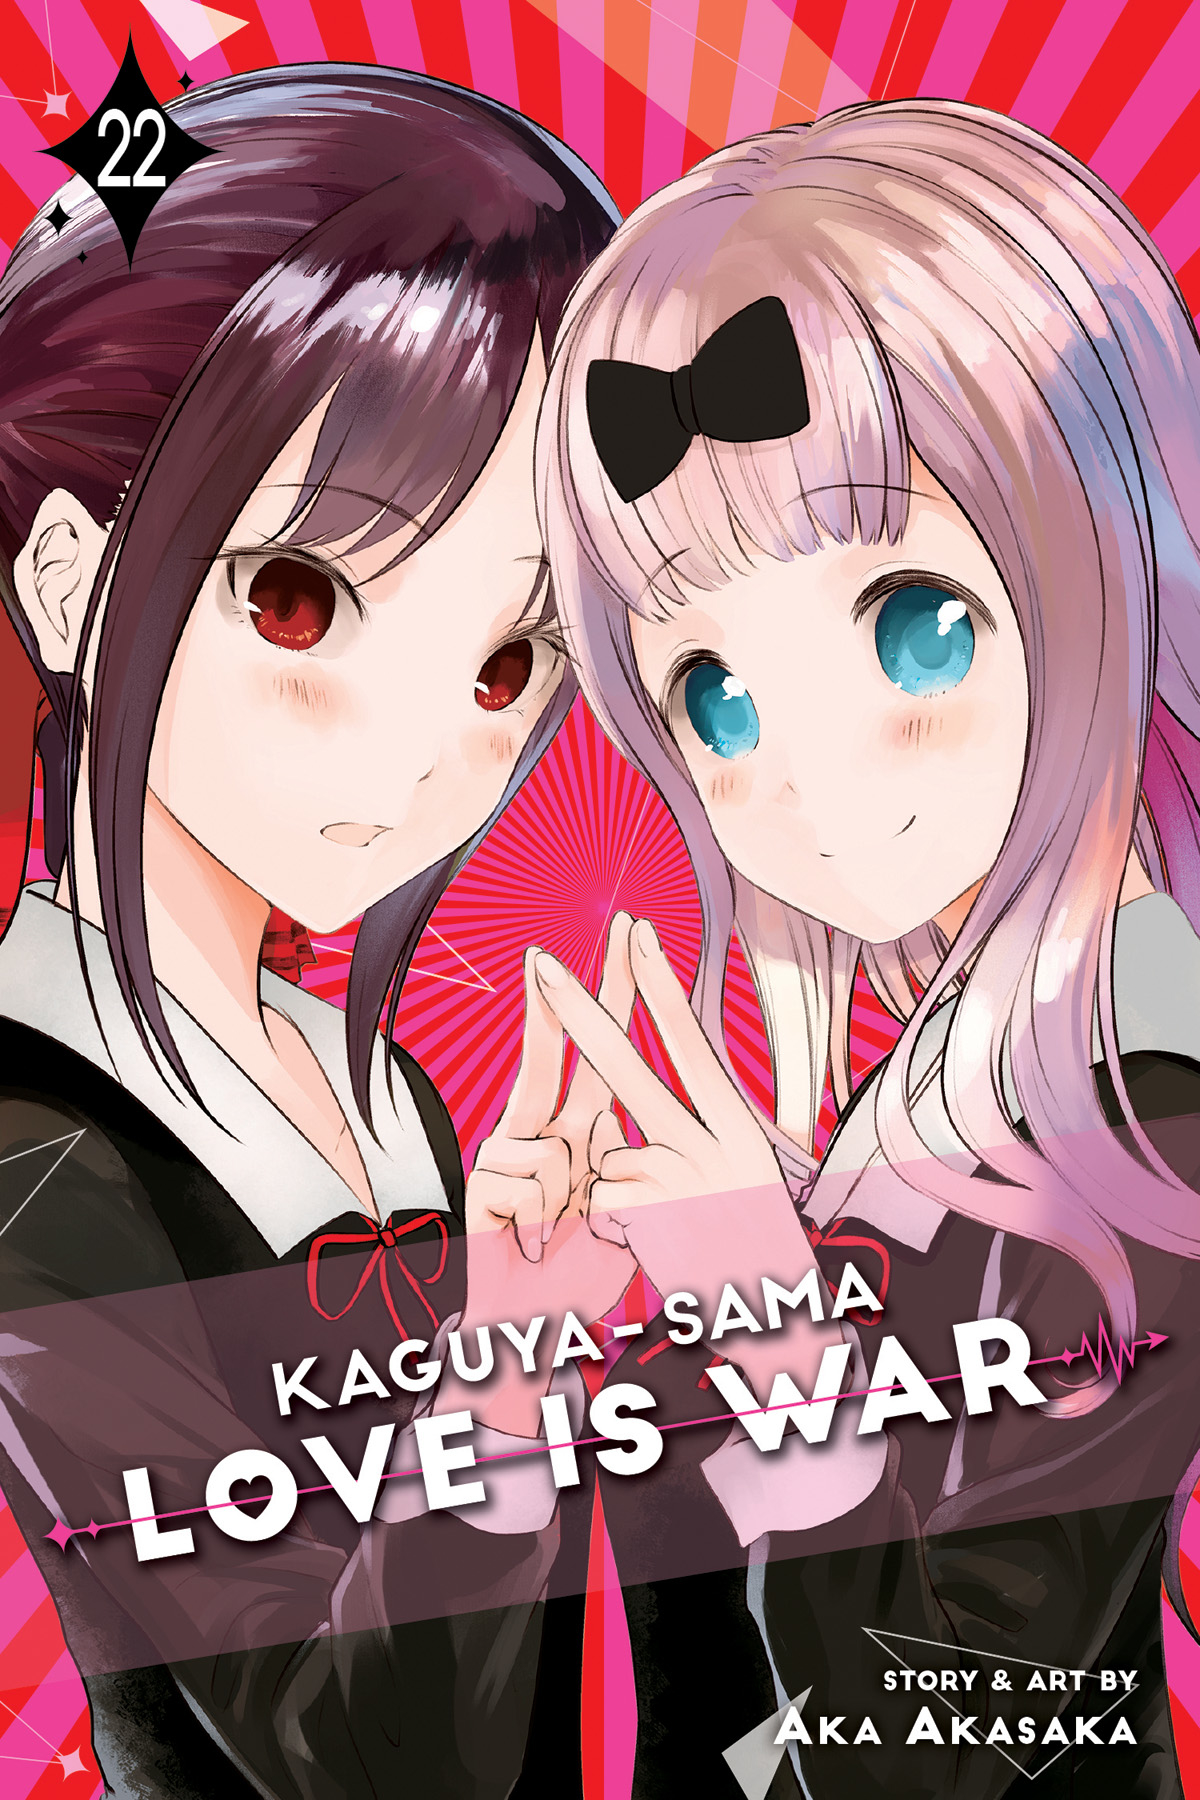 Kaguya Sama Love is War Manga Volume 22